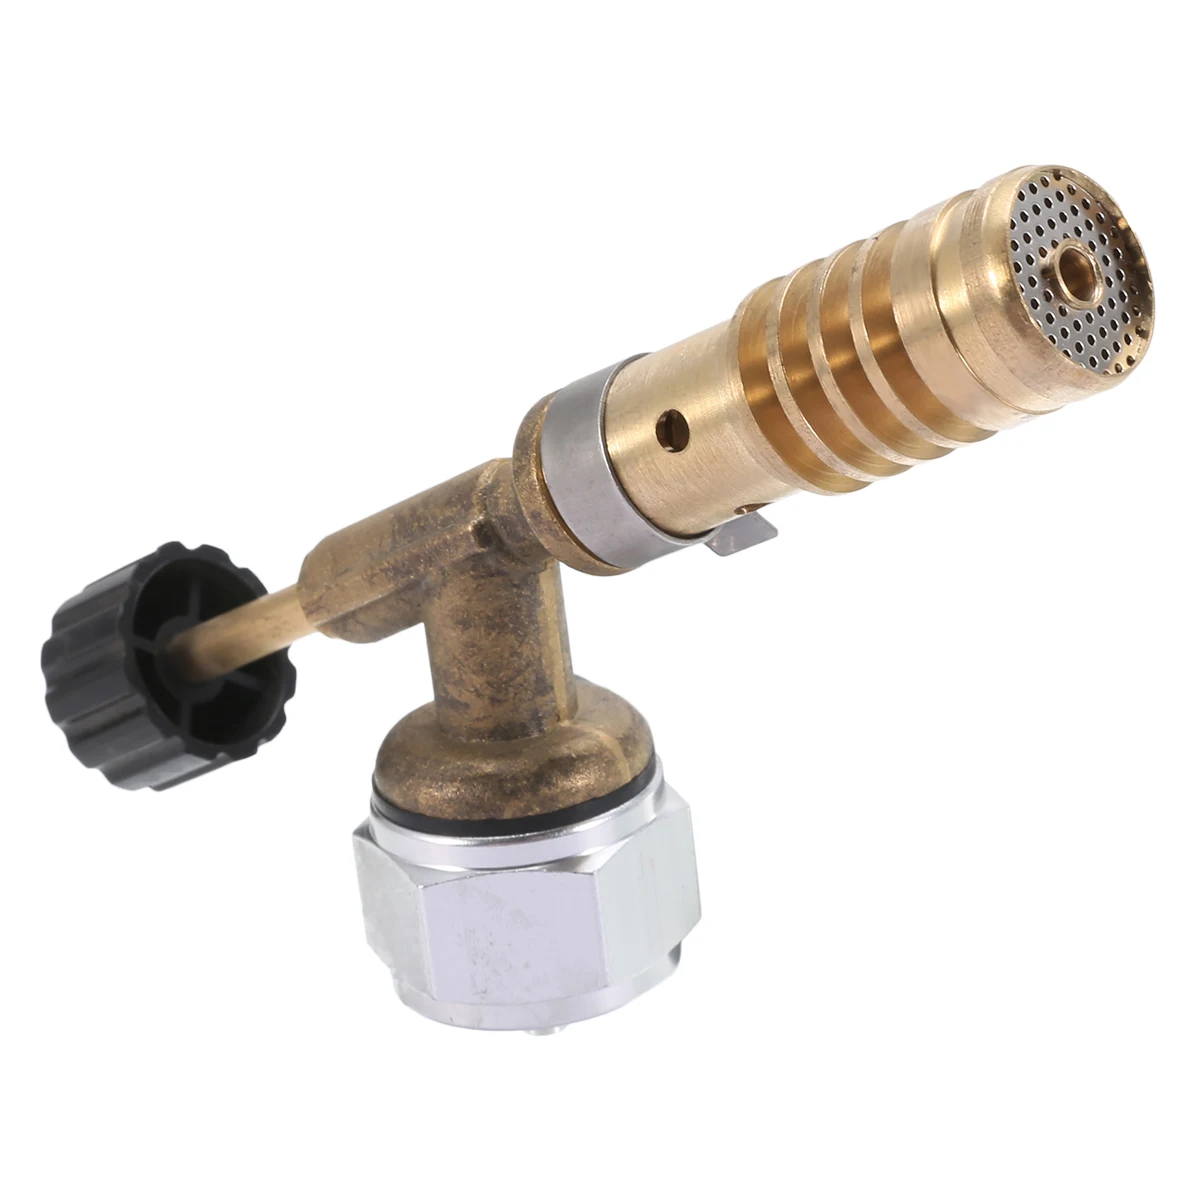 High Temperature Brass Mapp Gas Torch Aluminum Brazing Solder Propane Welding Plumbing 135x45x25mm